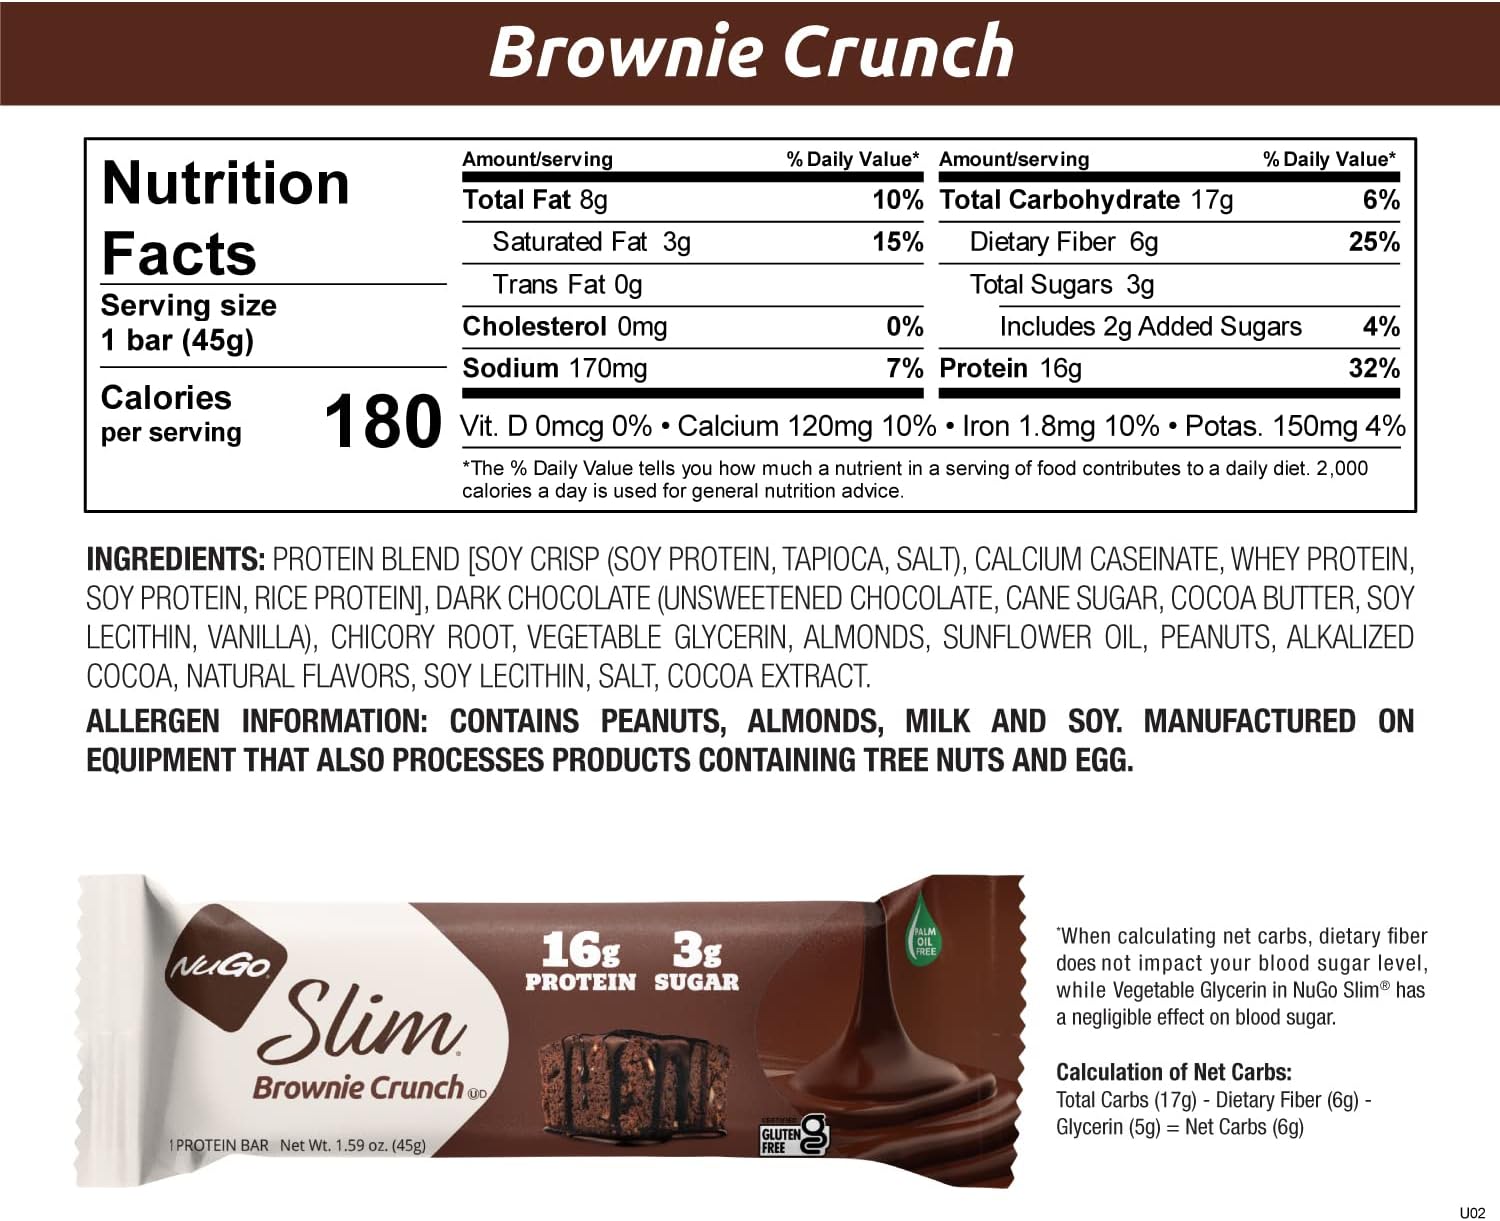 Nugo Slim Dark Chocolate Brownie Crunch, 16g Protein, 2g Sugar, 7g Fib